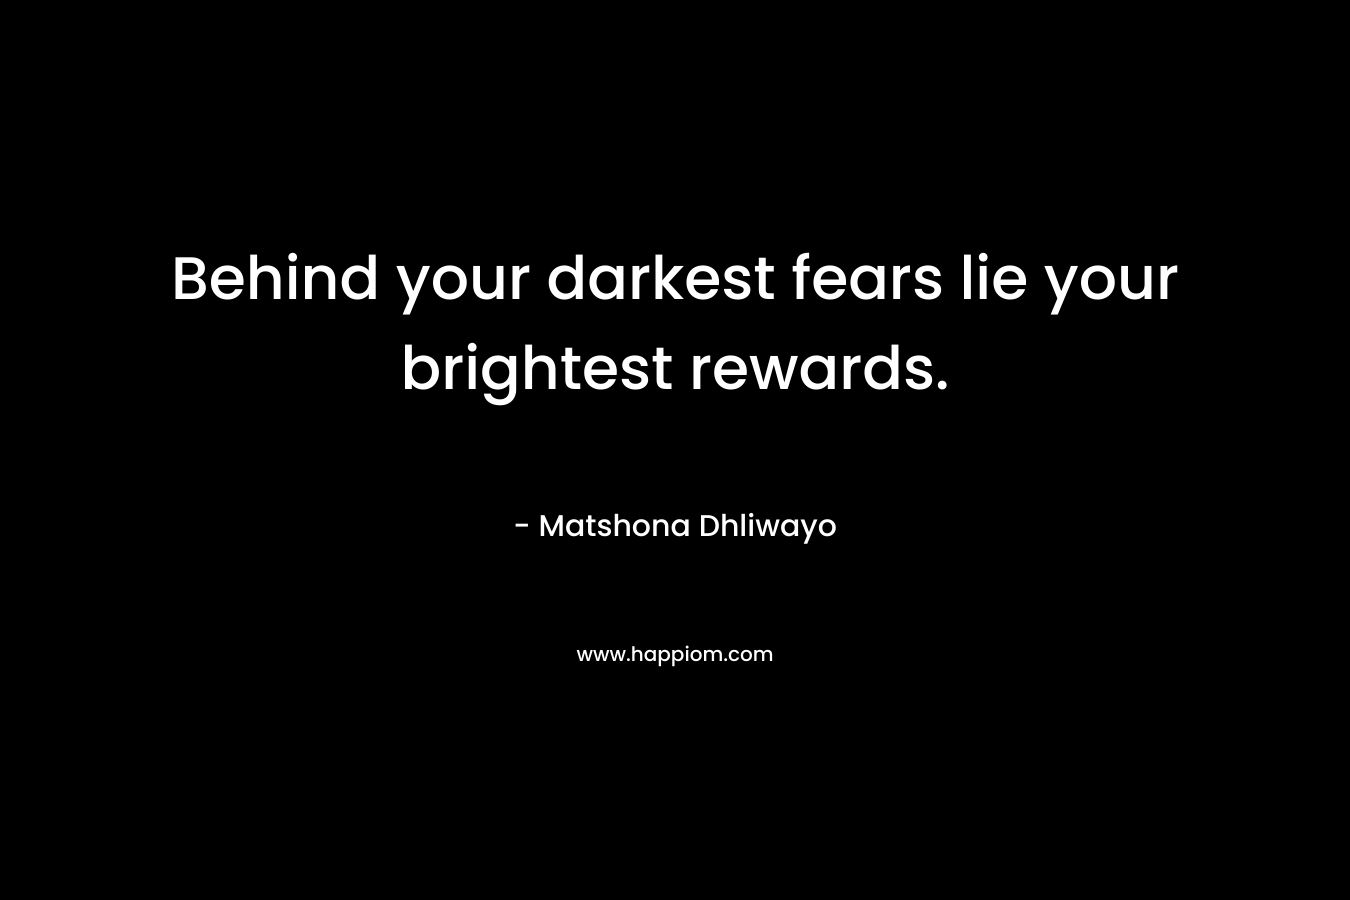 Behind your darkest fears lie your brightest rewards.